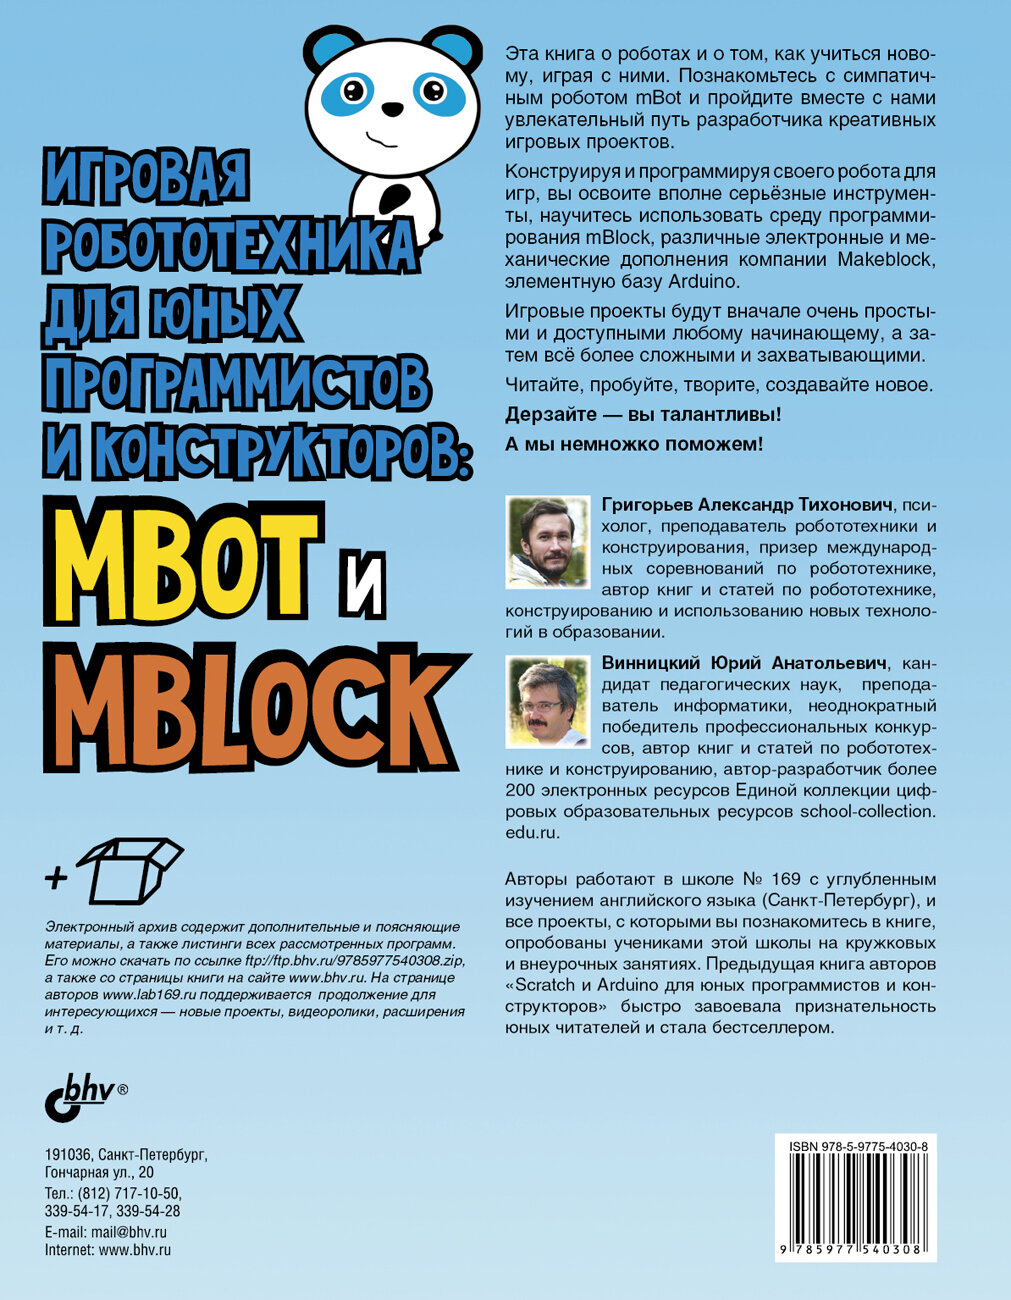 Игровая робототехника для юных программистов и конструкторов: mBot и mBlock - фото №4